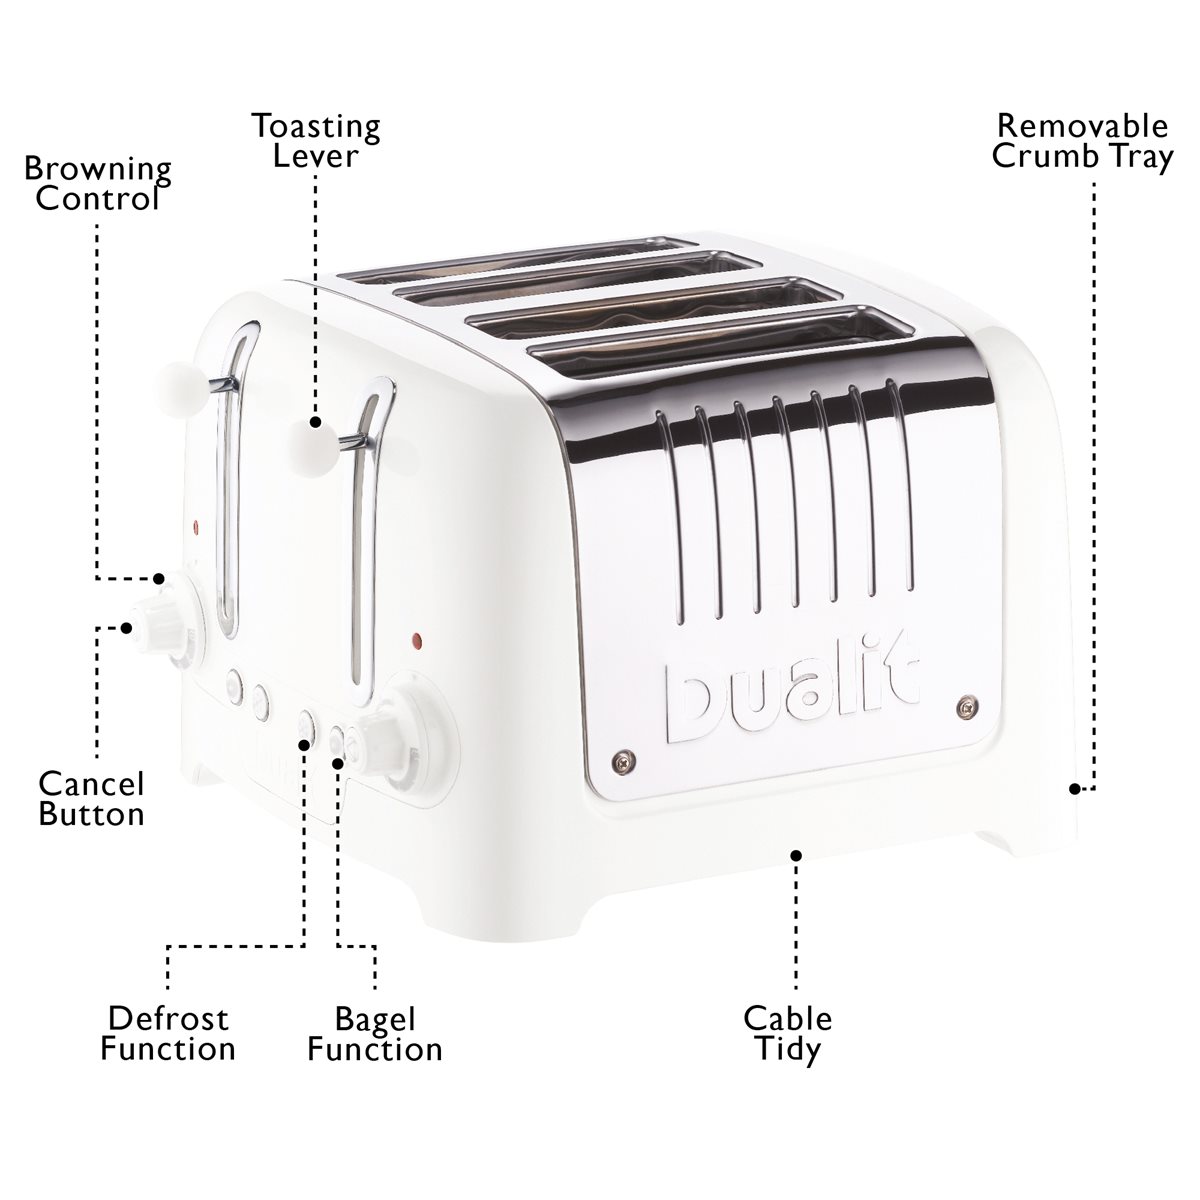 Buy Dualit DPP4 Lite 4 Slice Toaster - Black, Toasters